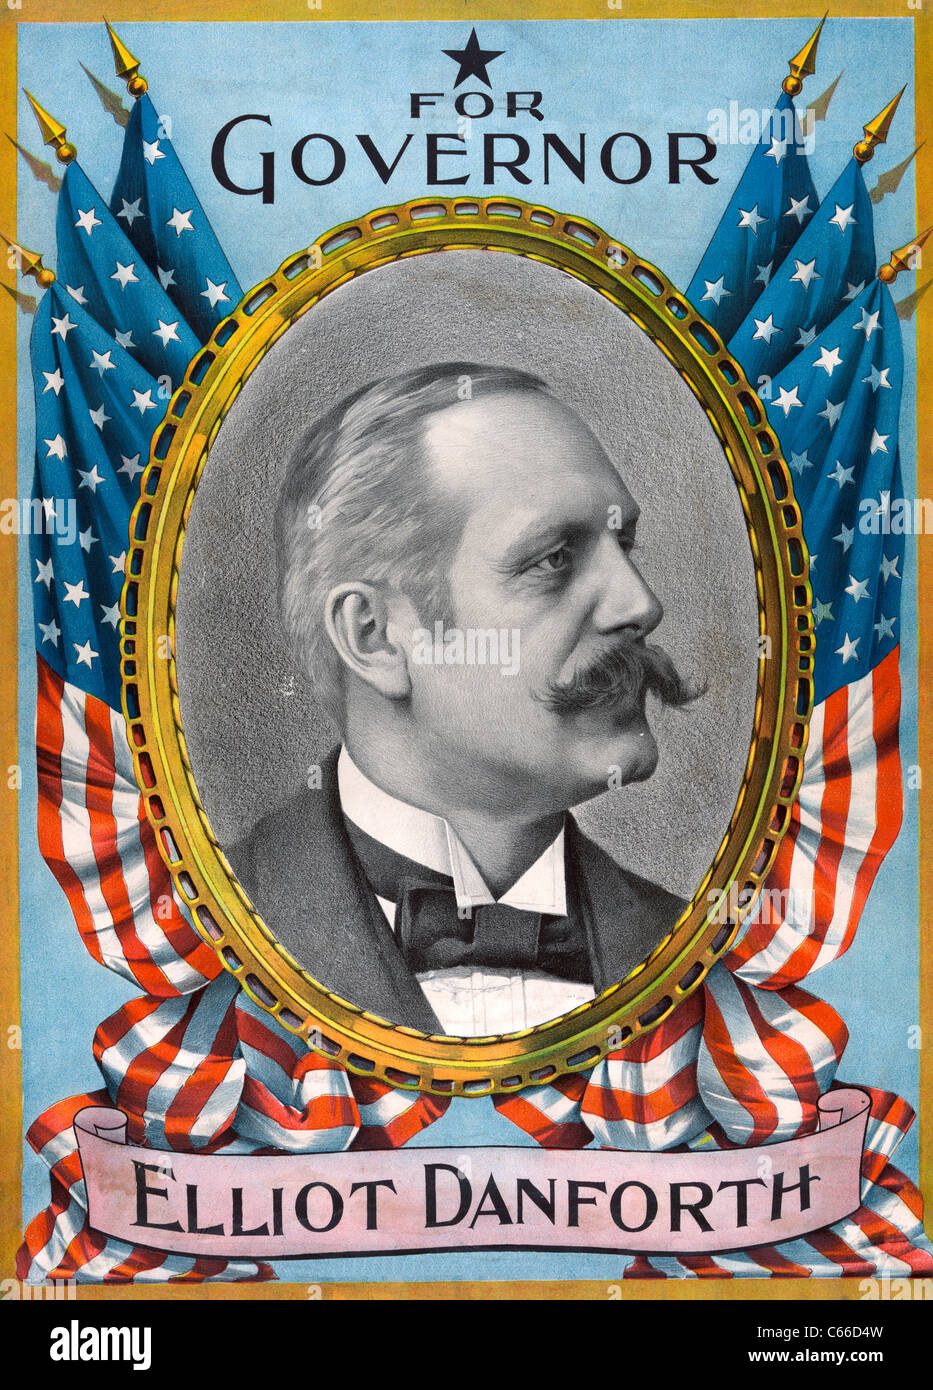 Für Gouverneur Elliot Danforth, New York, 1898 Wahlplakat Stockfoto